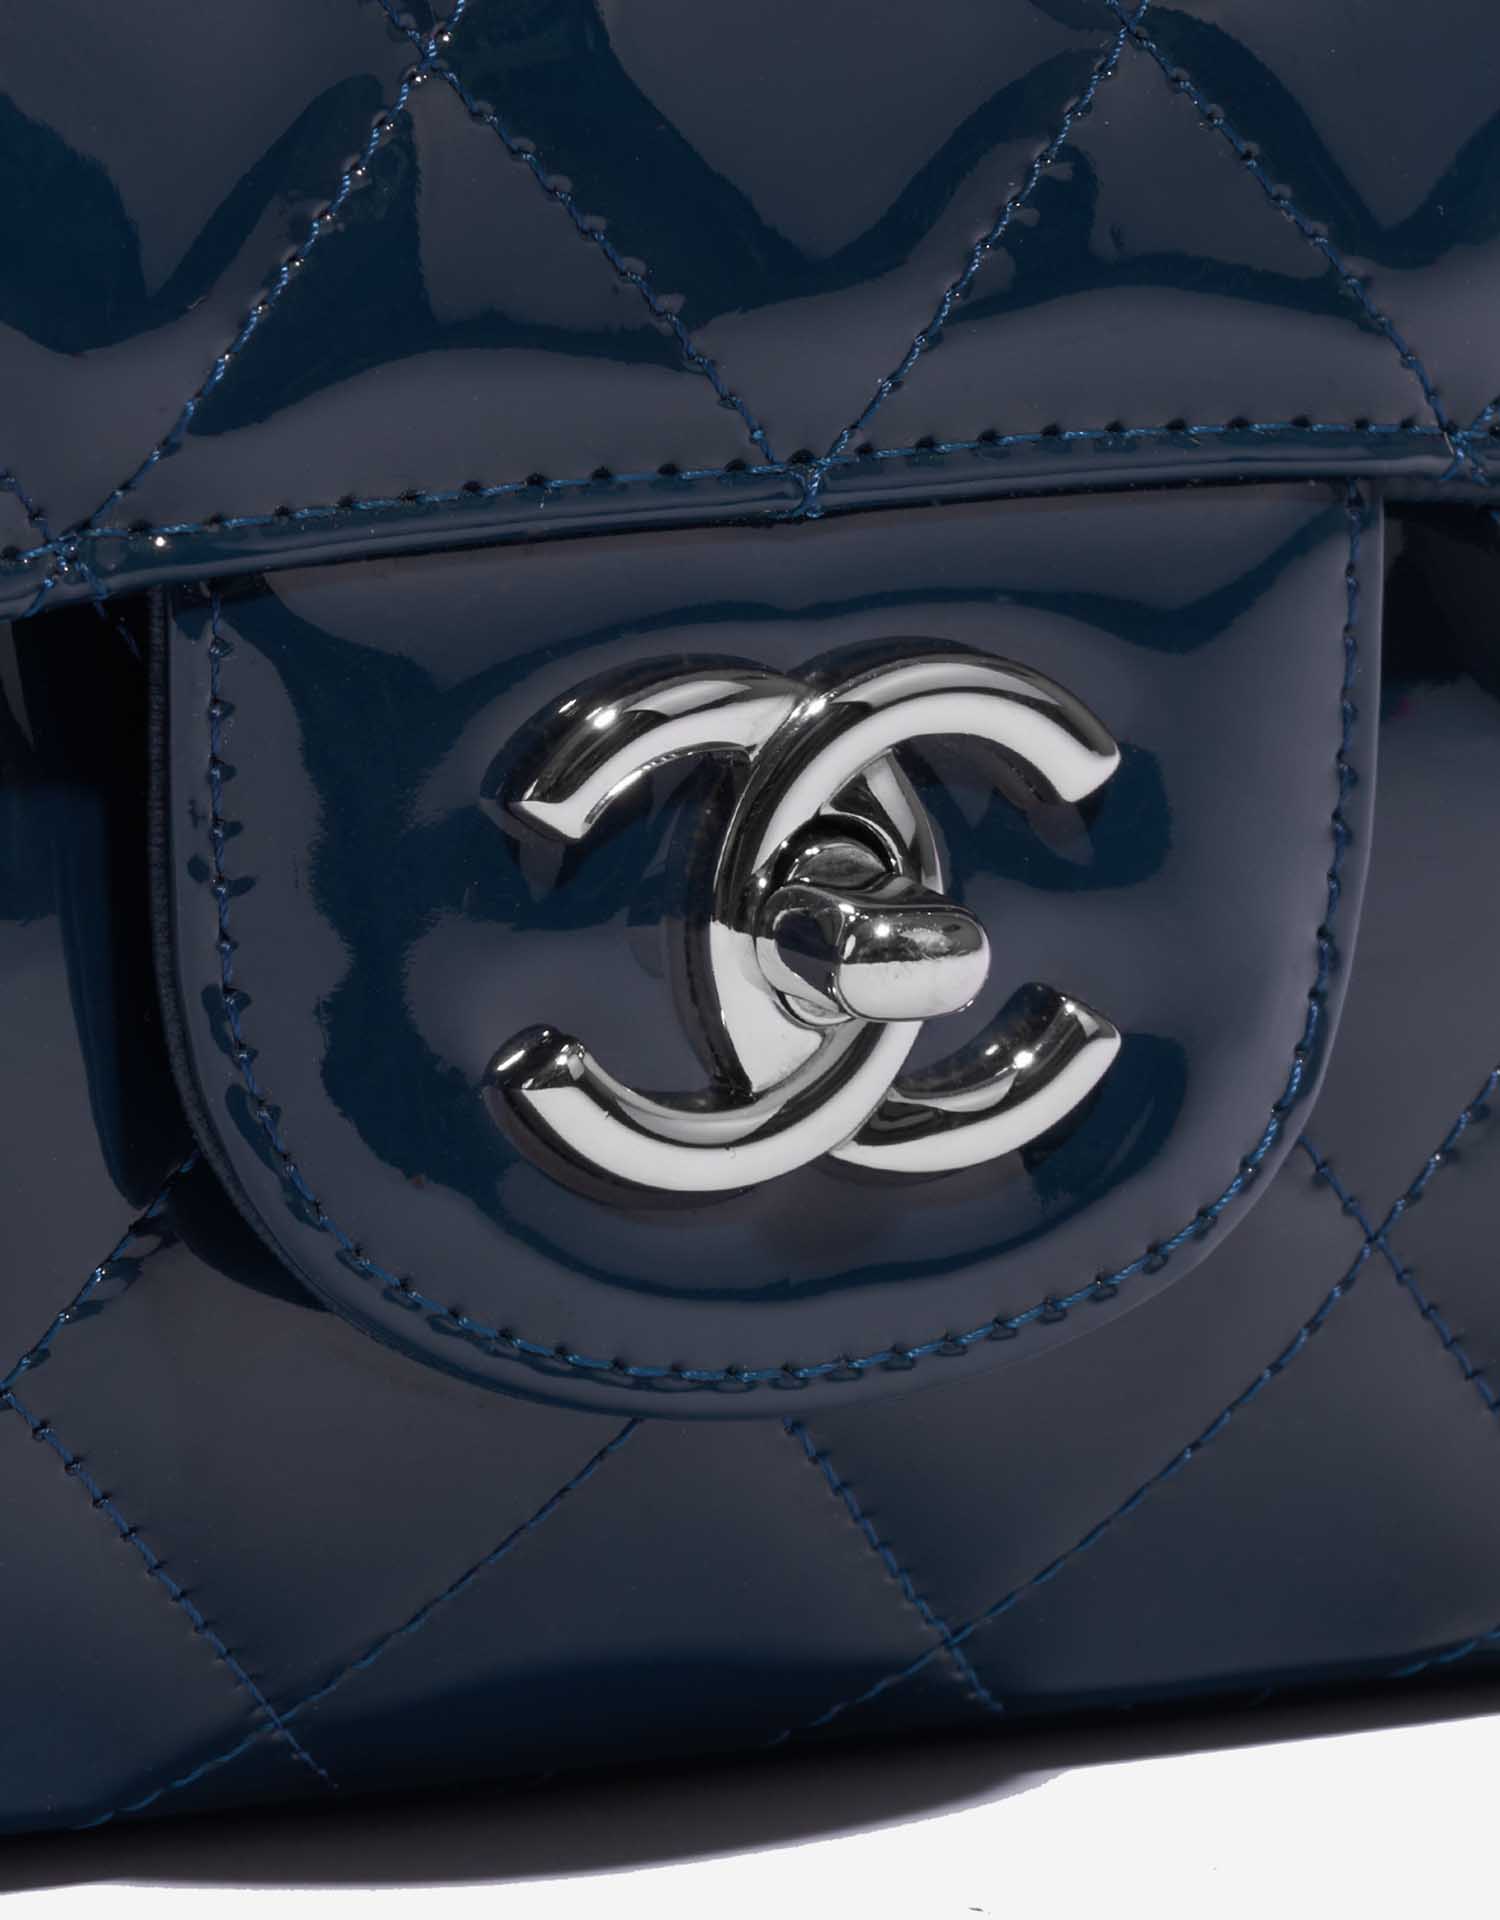 Sac Chanel d'occasion Classique Maxi Patent Leather Marine Blue Closing System | Vendez votre sac de créateur sur Saclab.com